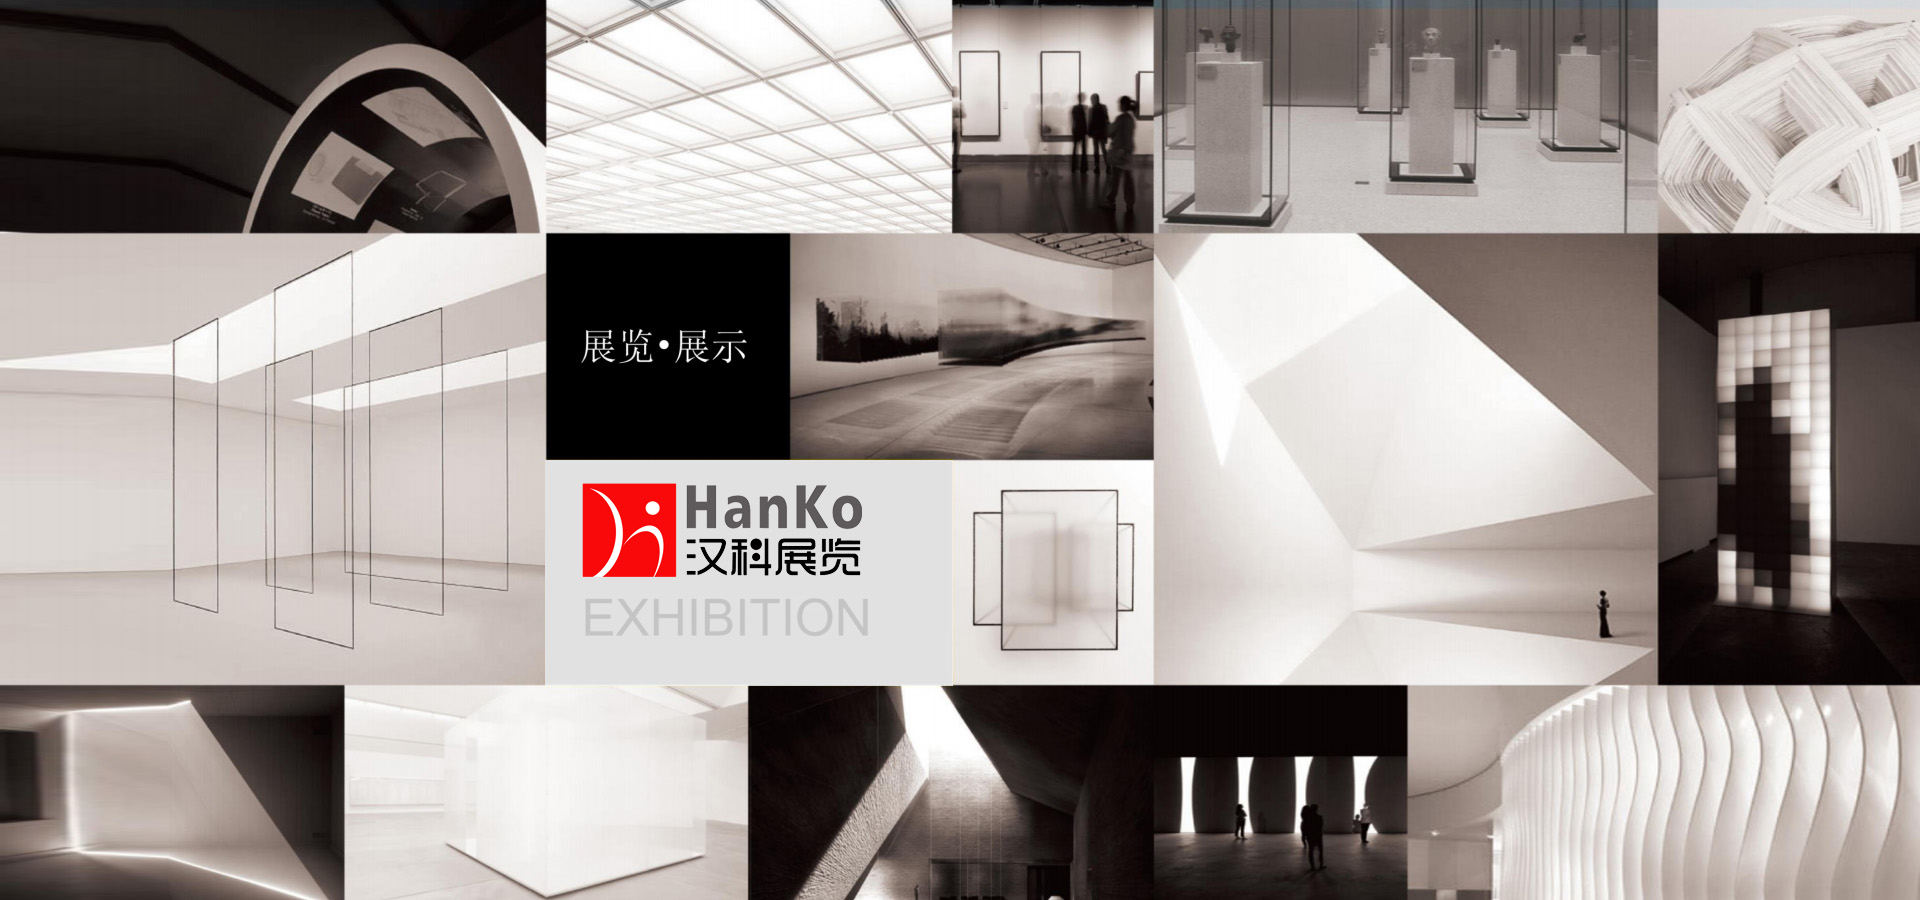 上海汉科展览展示有限公司是集广告、设计、制作为一体的综合公司,主要为客户提供上海展台搭建、展示设计,展览设计,展会搭建,家具展搭建,美博会设计等